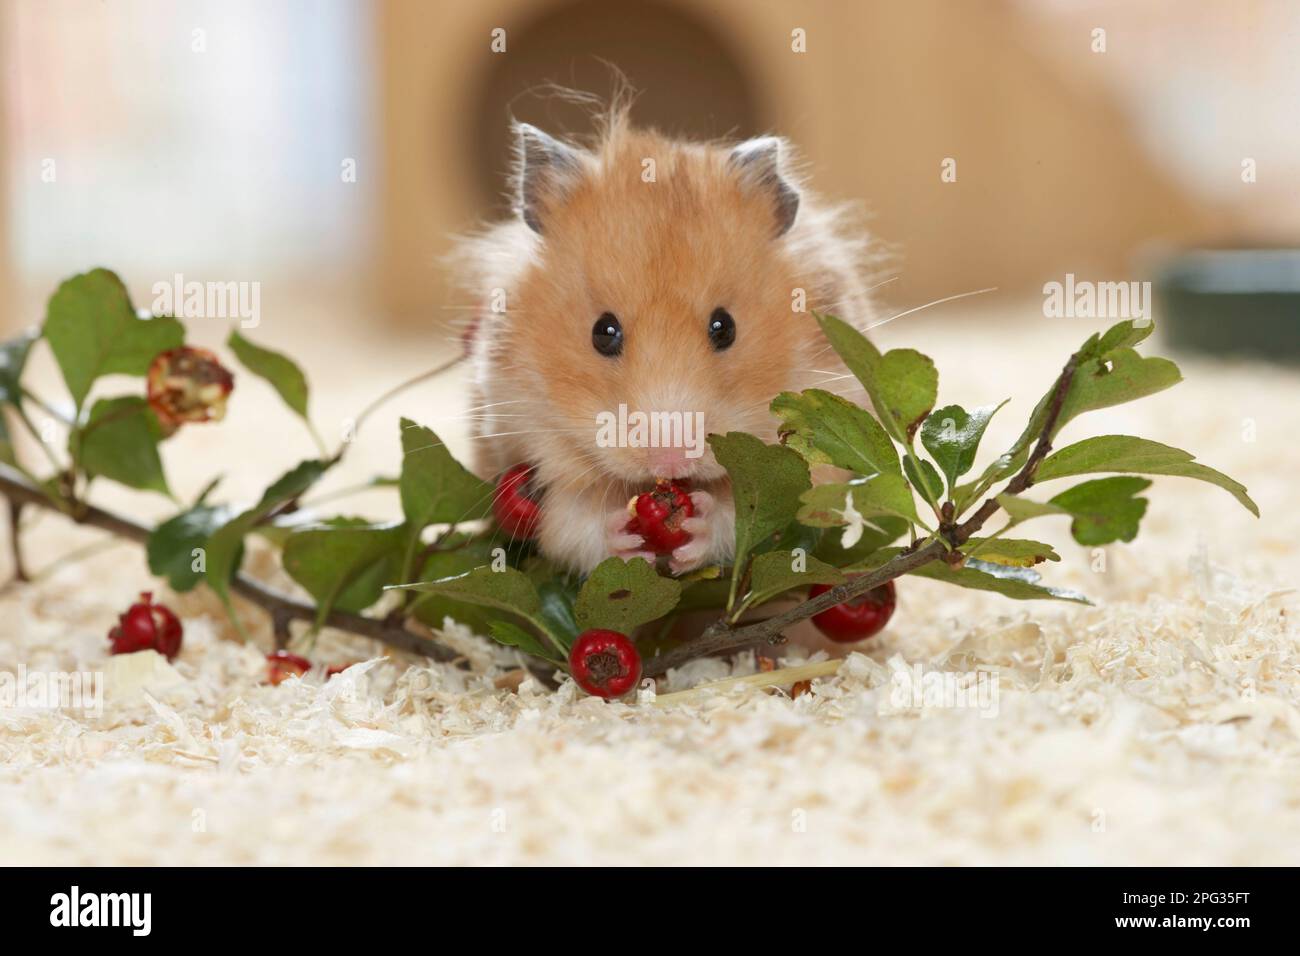 Un animal de compagnie de hamster doré mangeant des baies de Hawthorn. Allemagne Banque D'Images